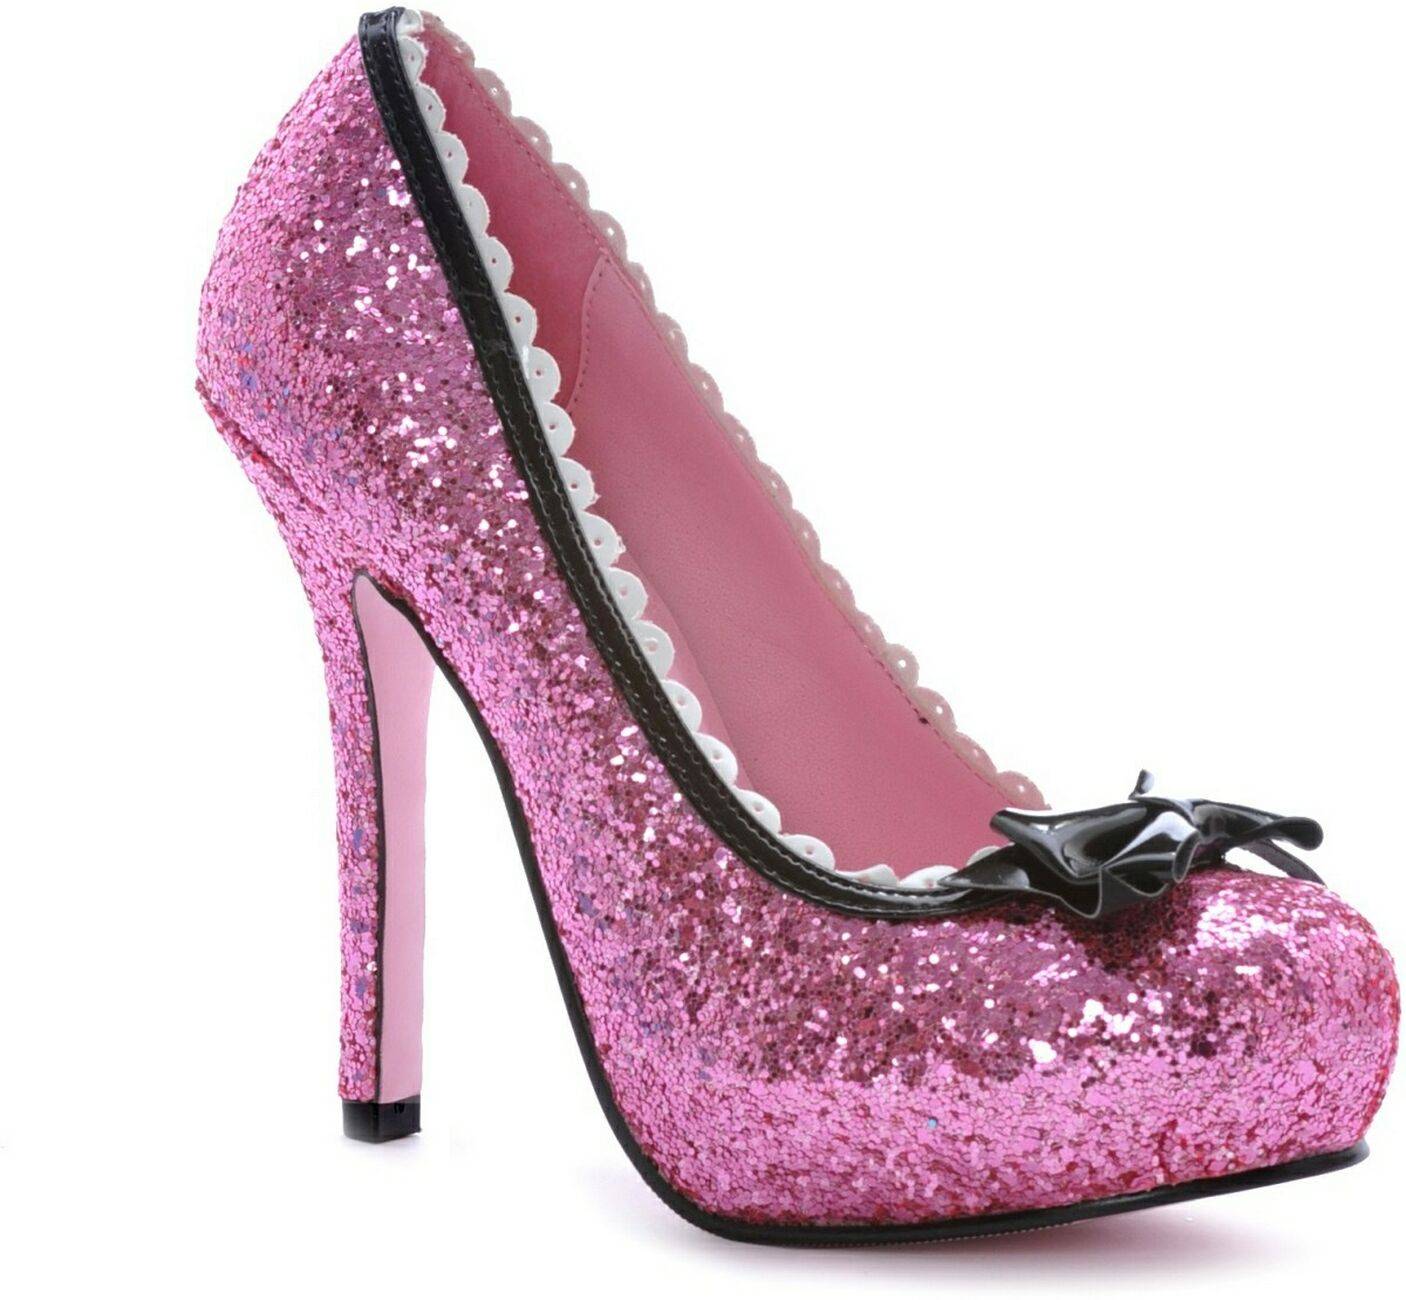 Glitter Pink Shoes Wallpaper HD